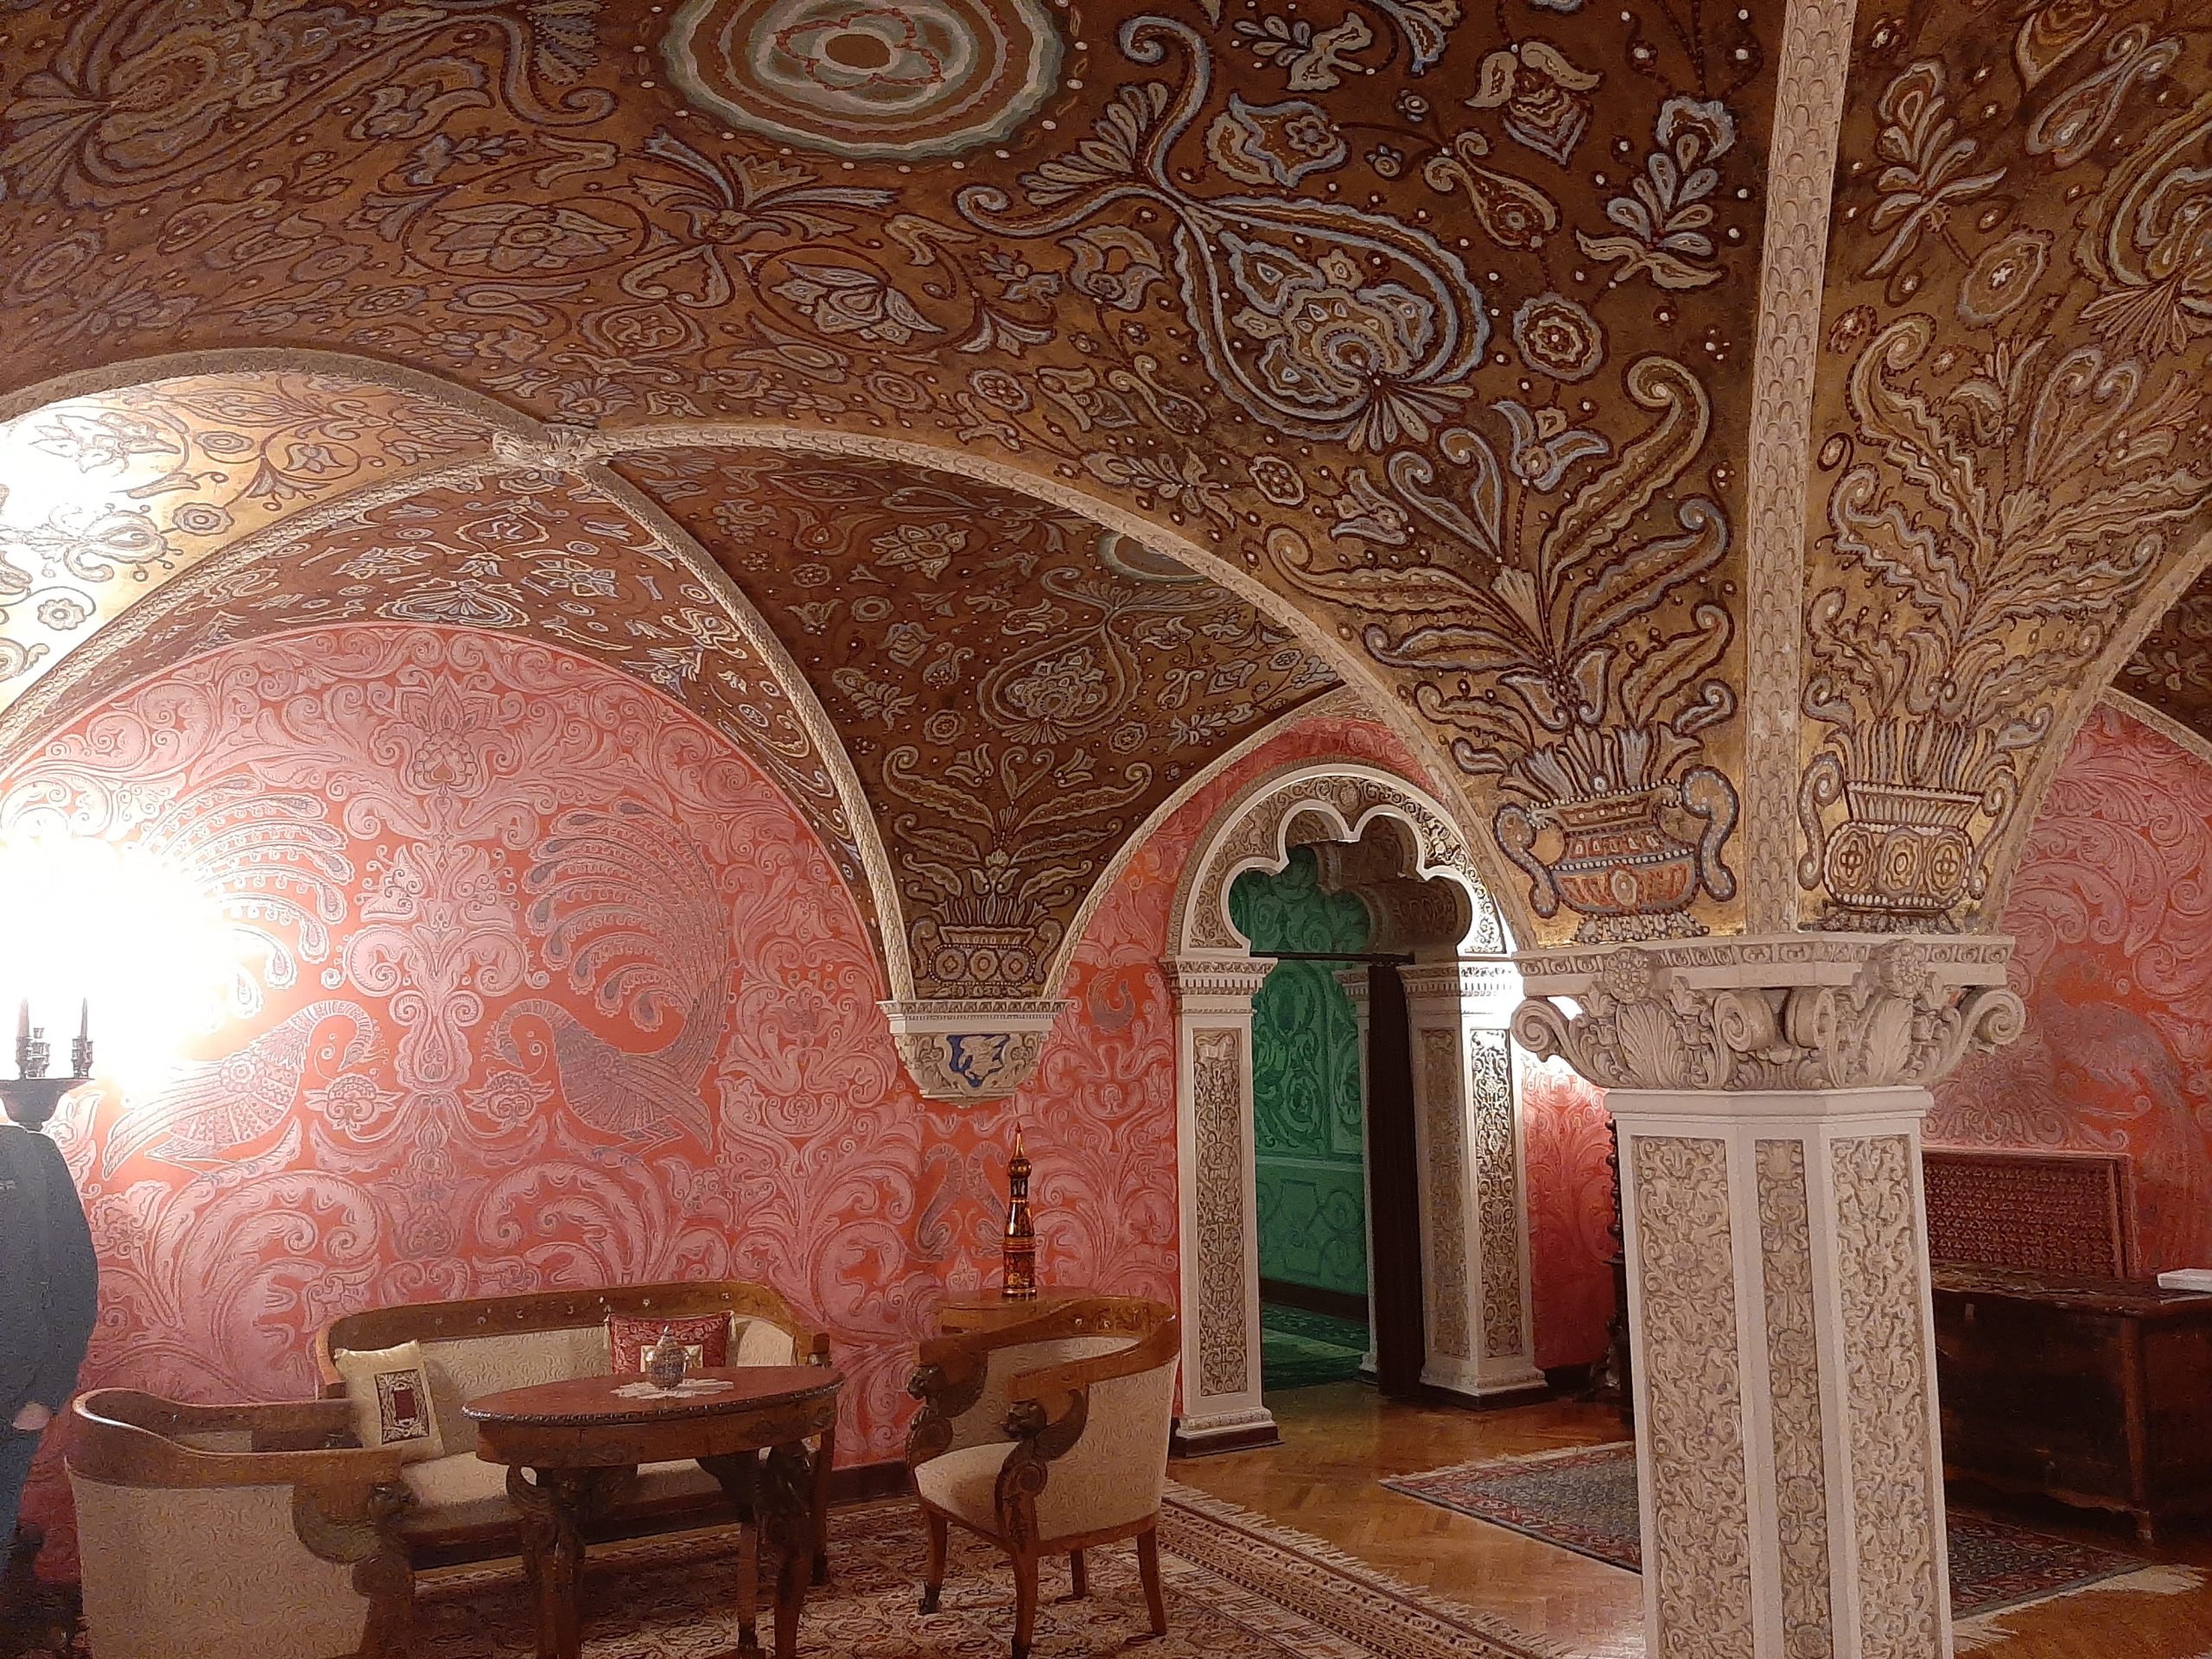 Deo kraljevog vinskog podruma, oslikan motivima iz ruskih bajki